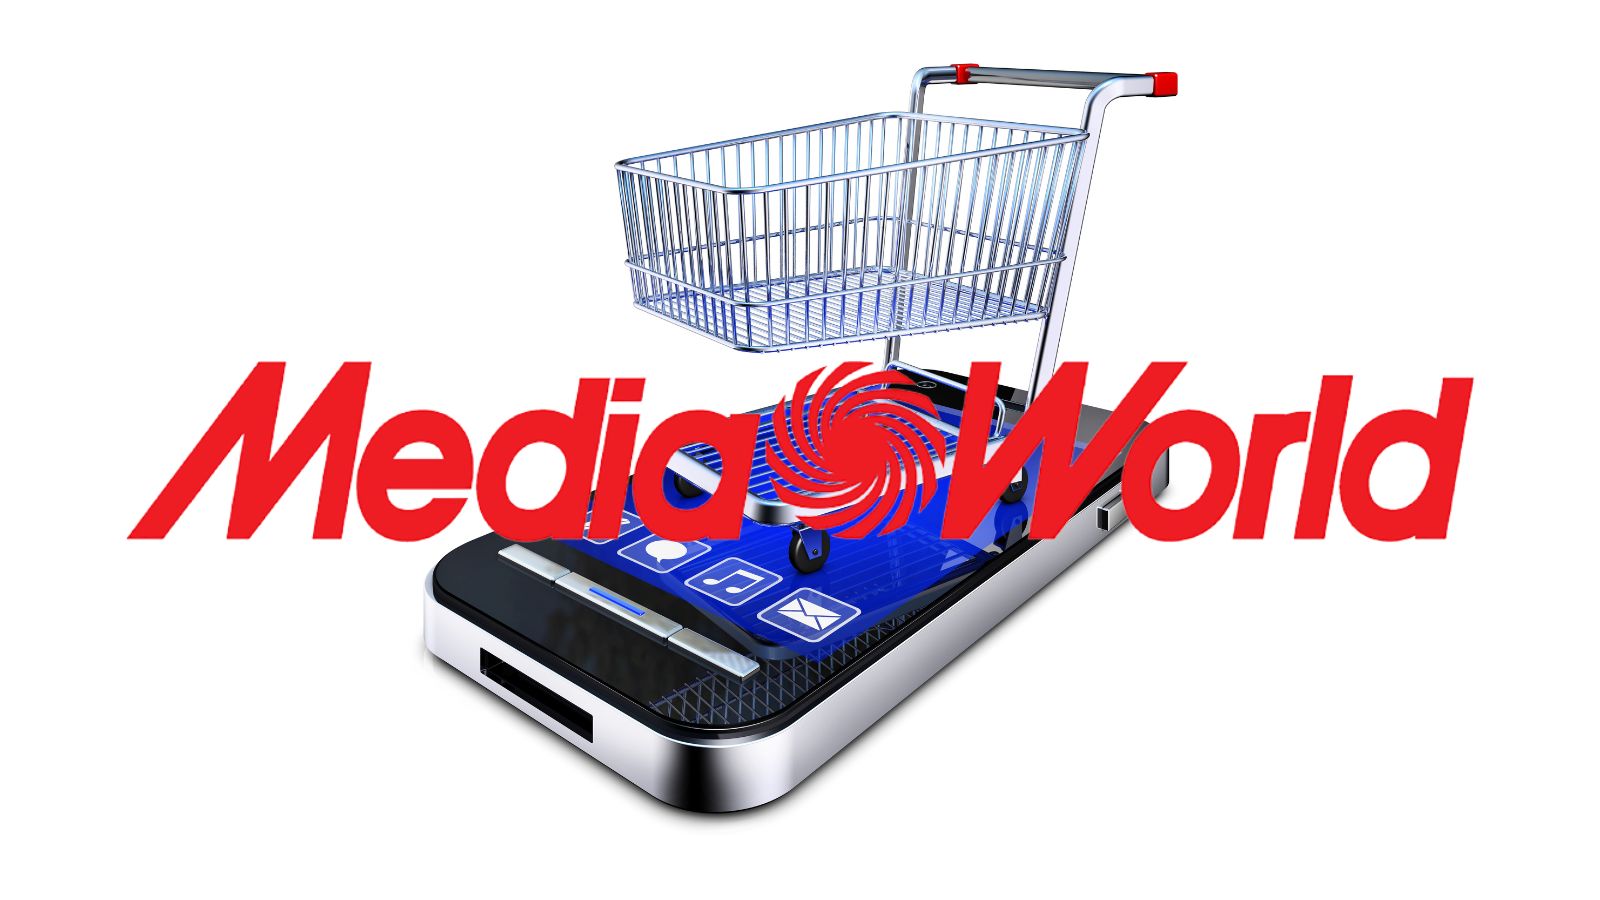 MediaWorld è ASSURDA, offerte al 90% con i PREZZI più bassi dell'anno